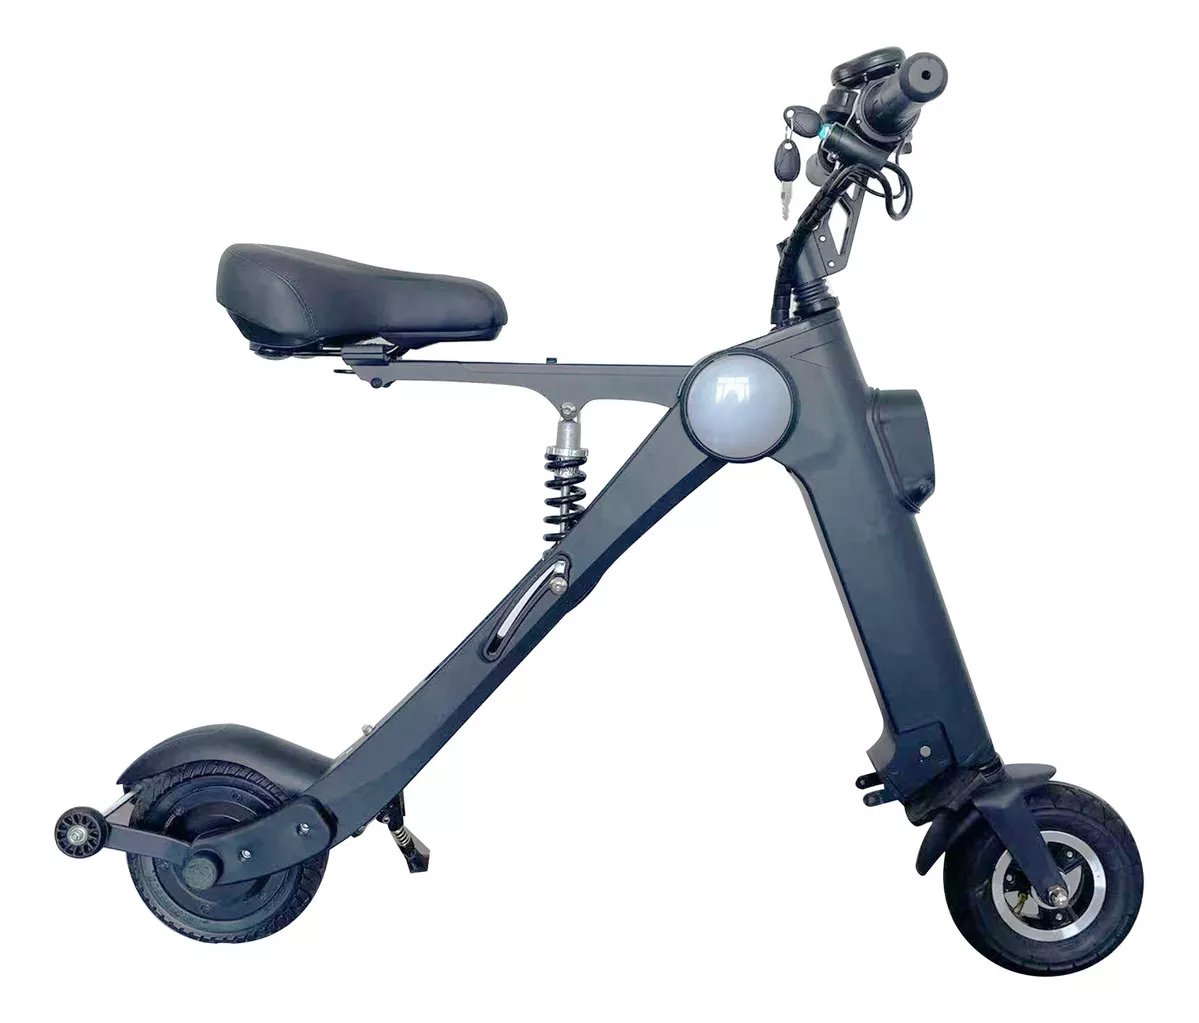 Primera imagen para búsqueda de scooter electrico con asiento